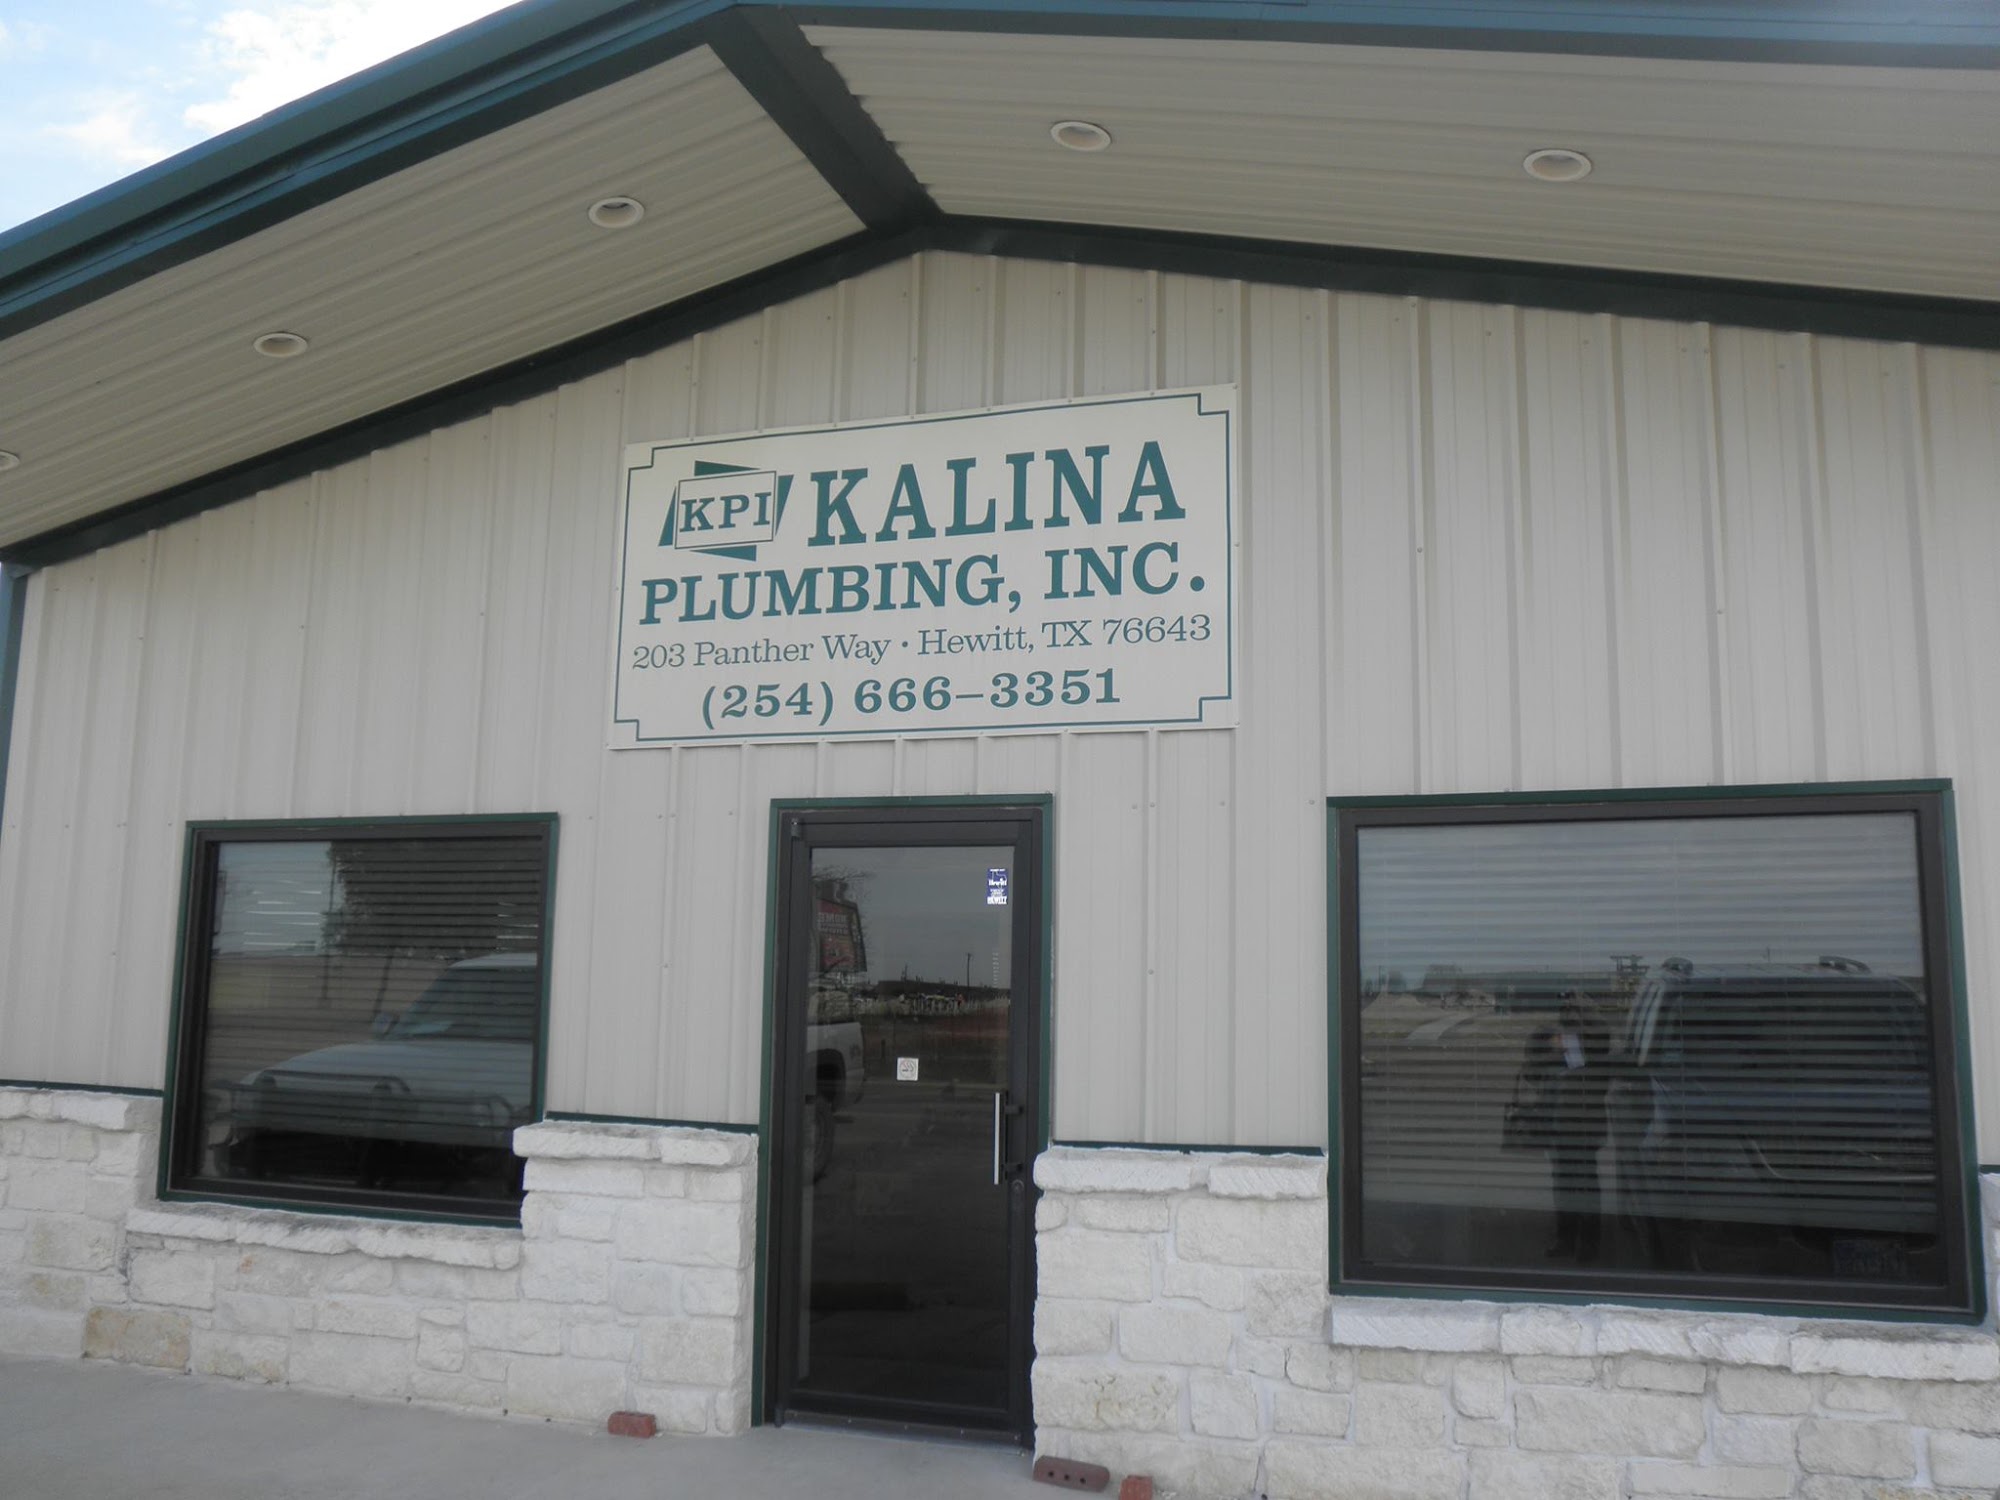 Kalina Plumbing 203 Panther Way, Hewitt Texas 76643